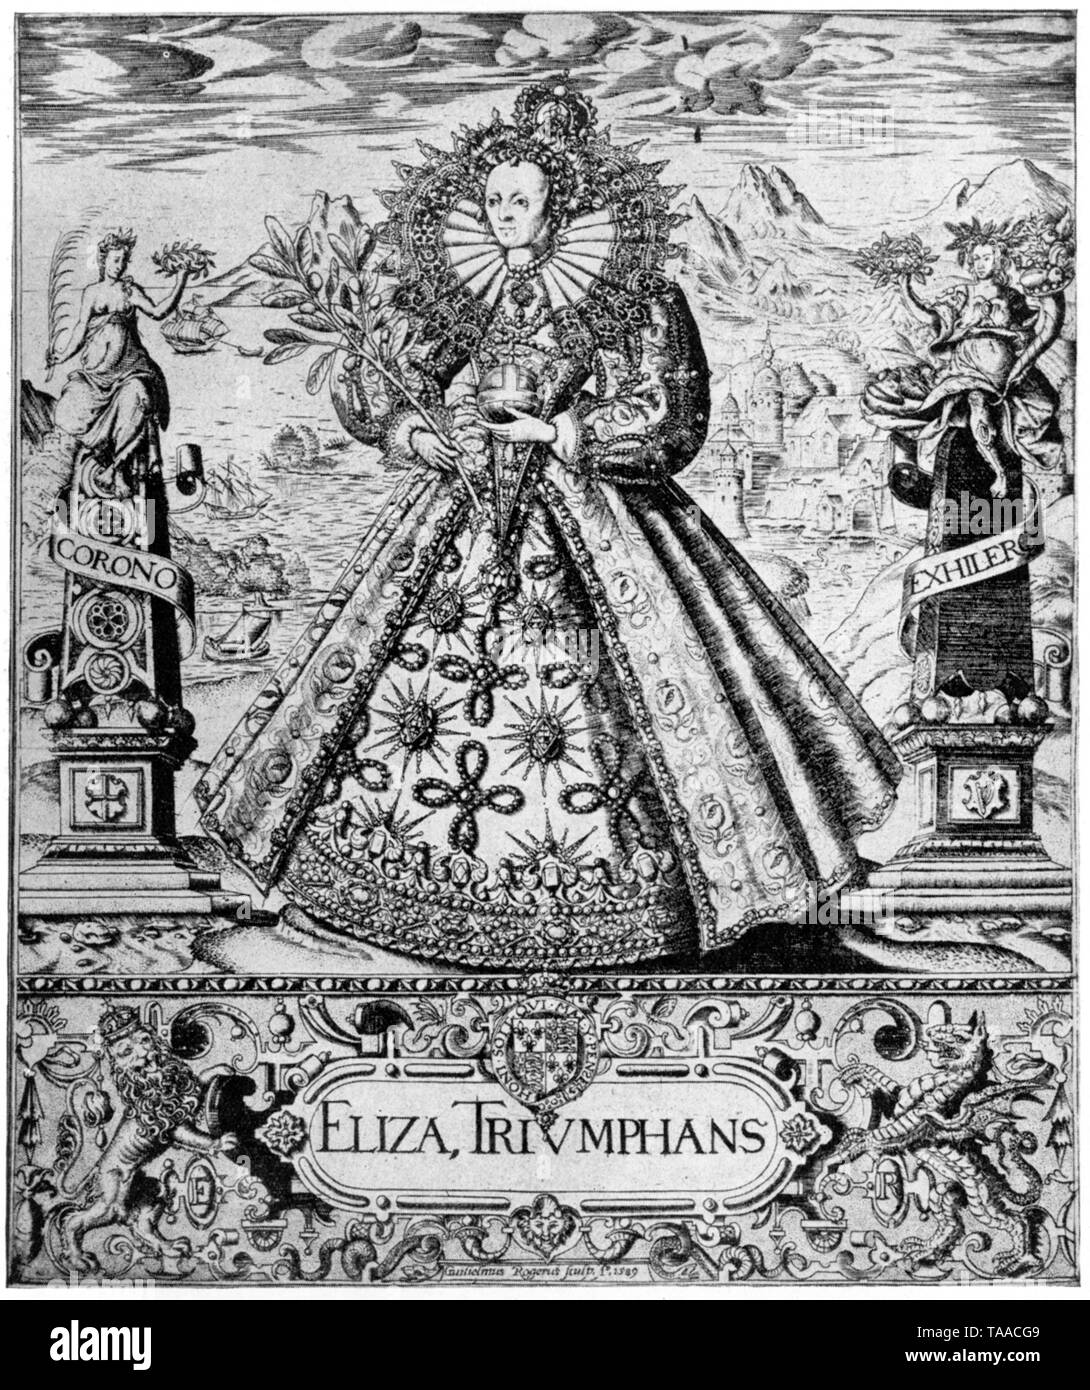 Elizabeth triomphant (Eliza Triumphans), c1589. Par William Rogers (c1545-c1604). Cette gravure en plaque de cuivre célèbre la victoire d'Elizabeth I sur l'Armada espagnole. Elle est triomphante entourée d'emblèmes de la victoire et de la paix, devant un paysage marin symbolisant la dominance britannique de la mer. Banque D'Images